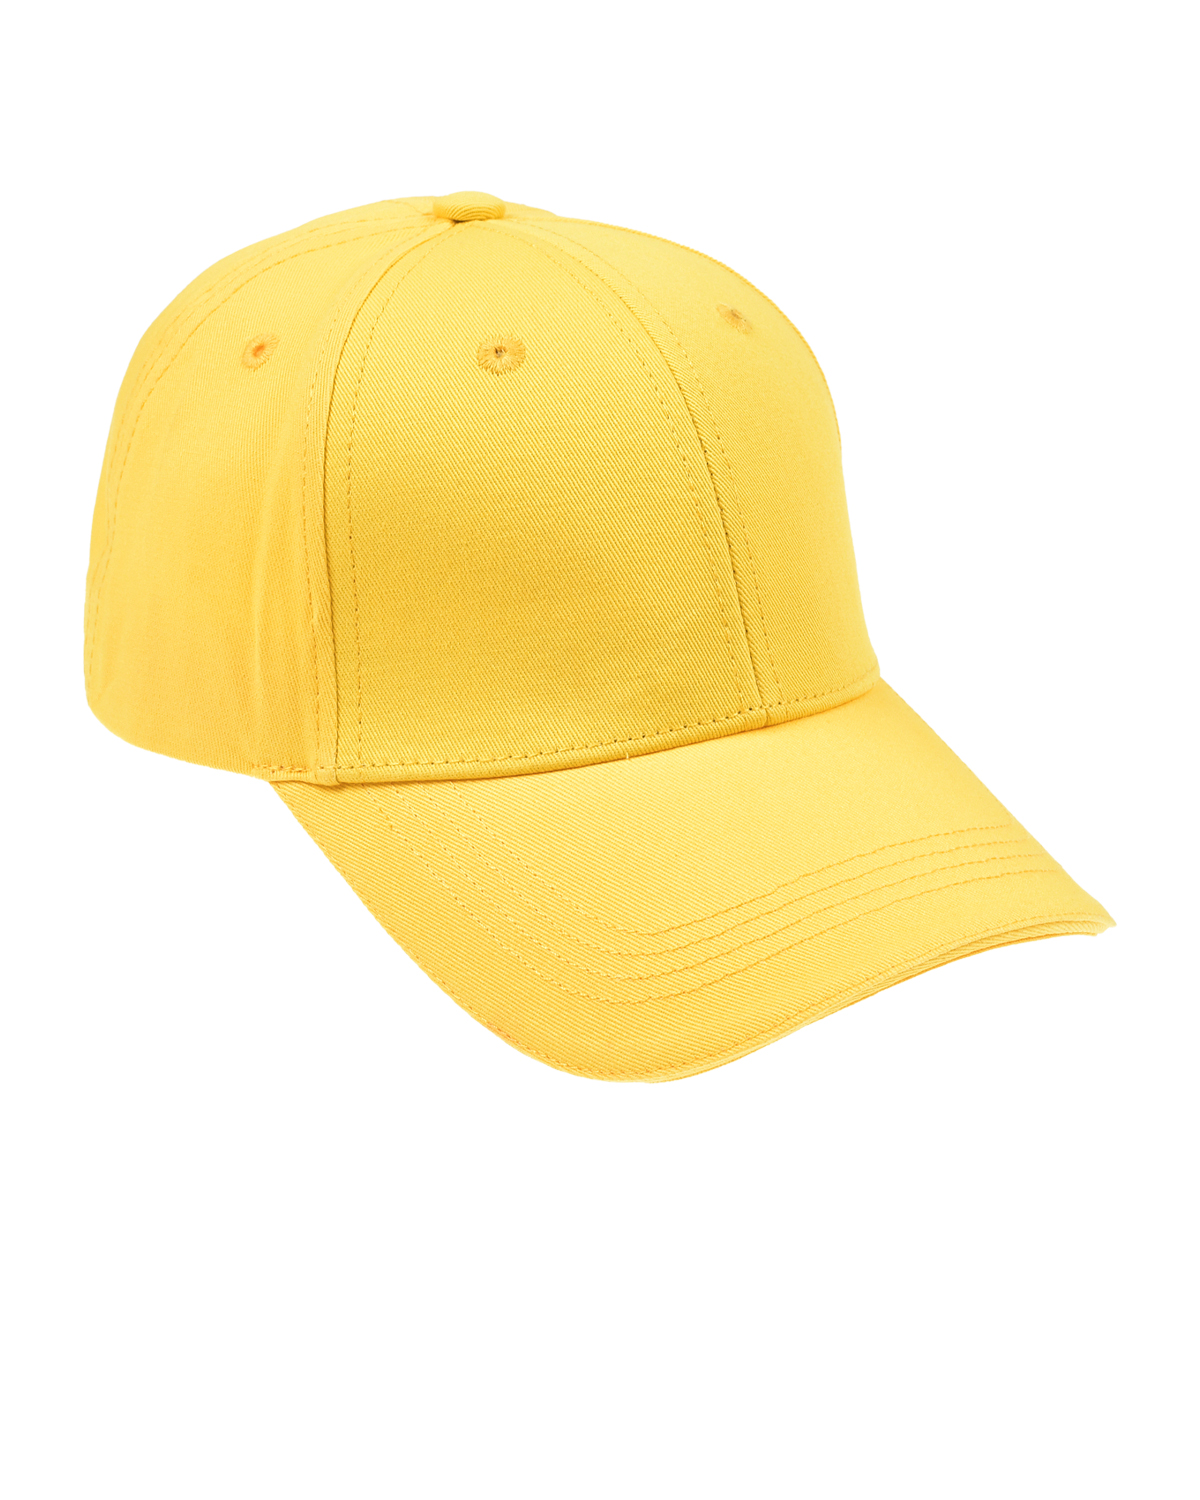 Базовая желтая кепка Jan&Sofie, размер unica, цвет желтый